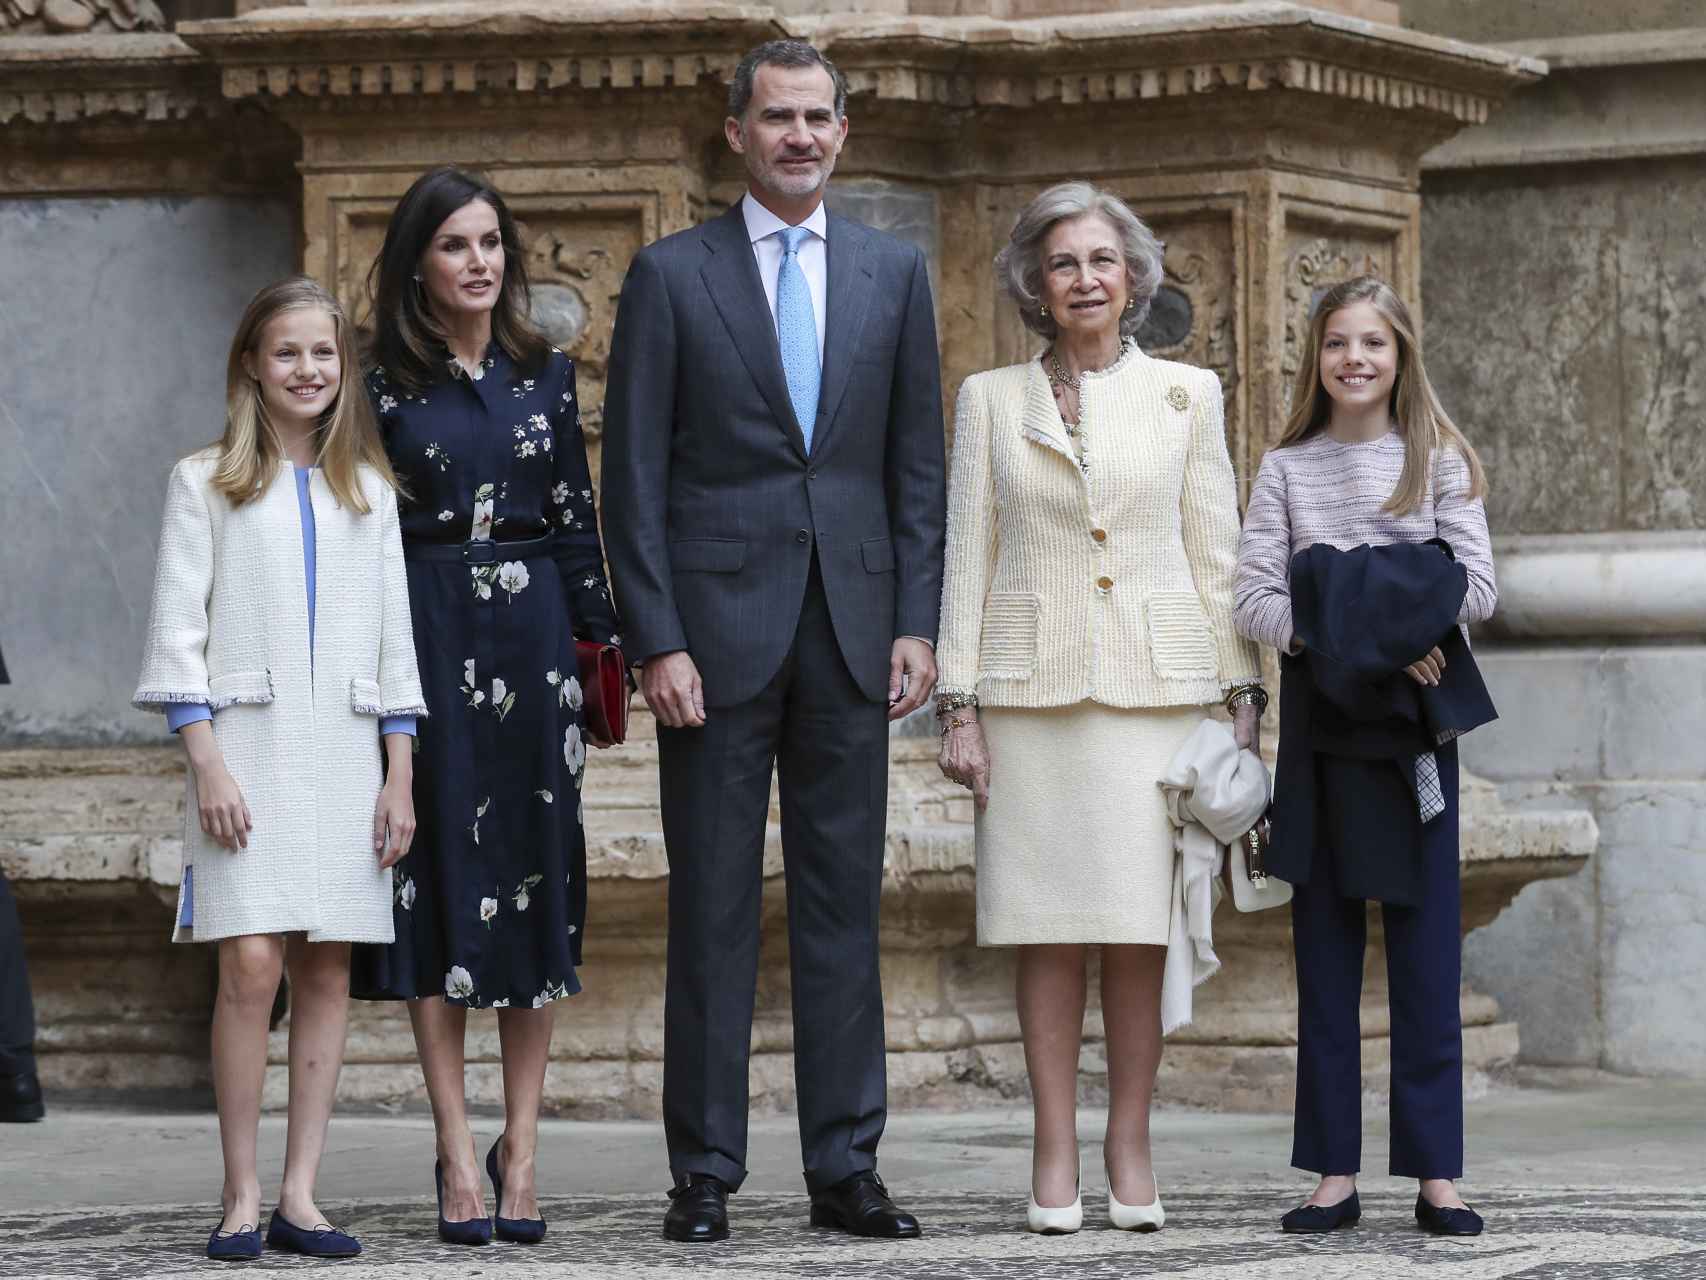 La última imagen de la Familia Real, junto a la Reina Emérita Sofía, tras la misa del Domingo de Resurrección de 2019 en Mallorca.